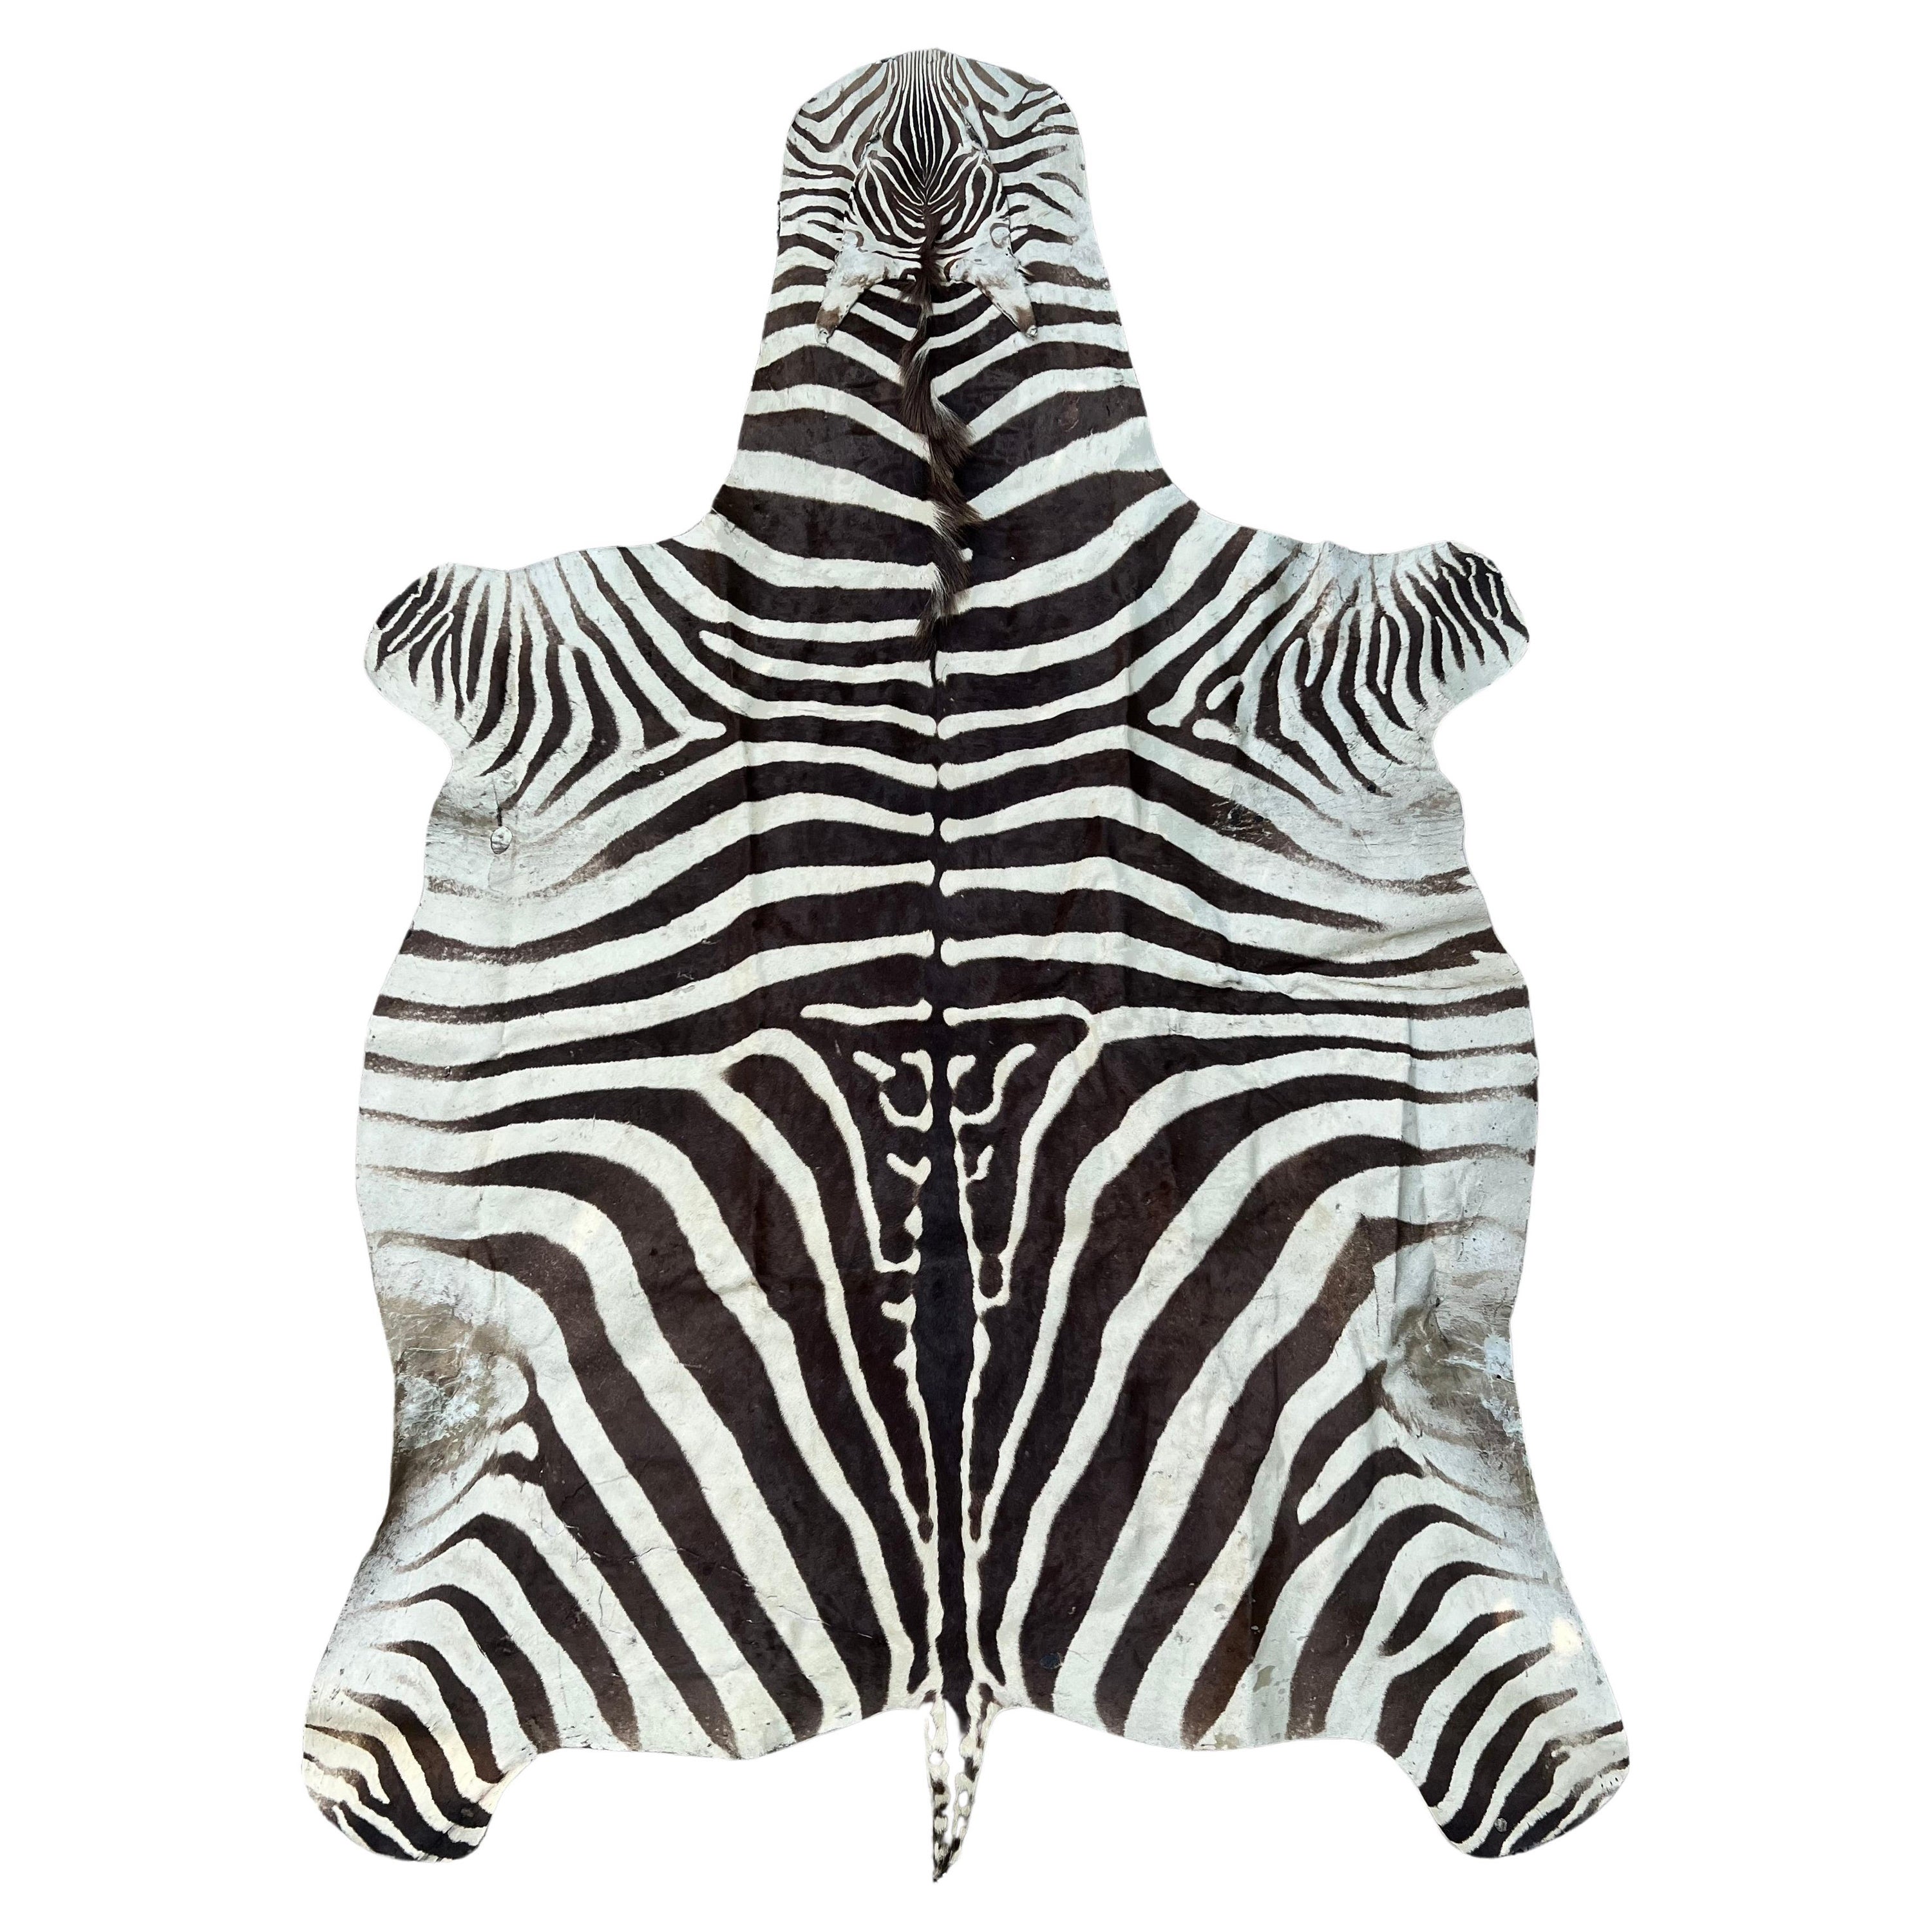 Zebra Hide Rug in the Style of Ralph Lauren